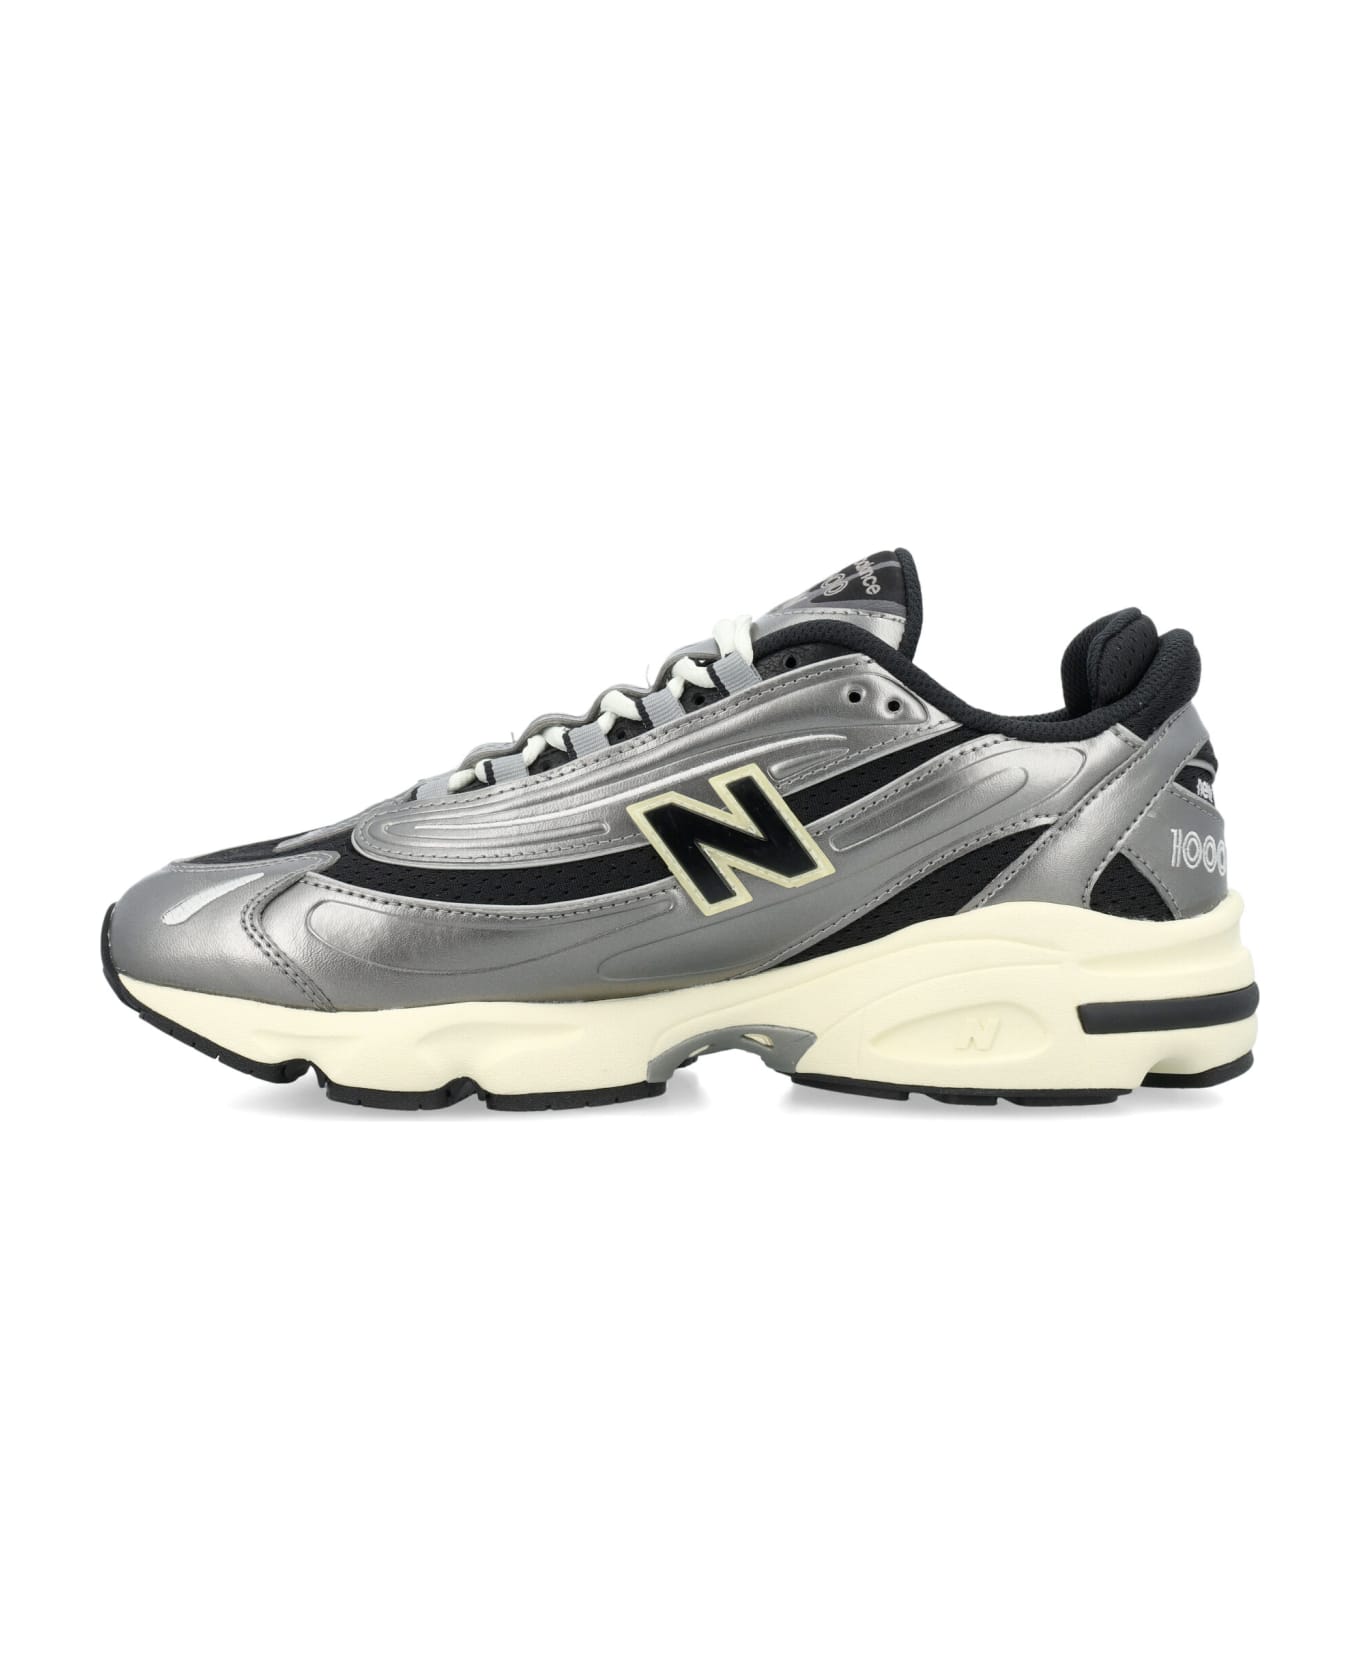 New Balance Nb 1000 Sneakers - SILVER METALLIC